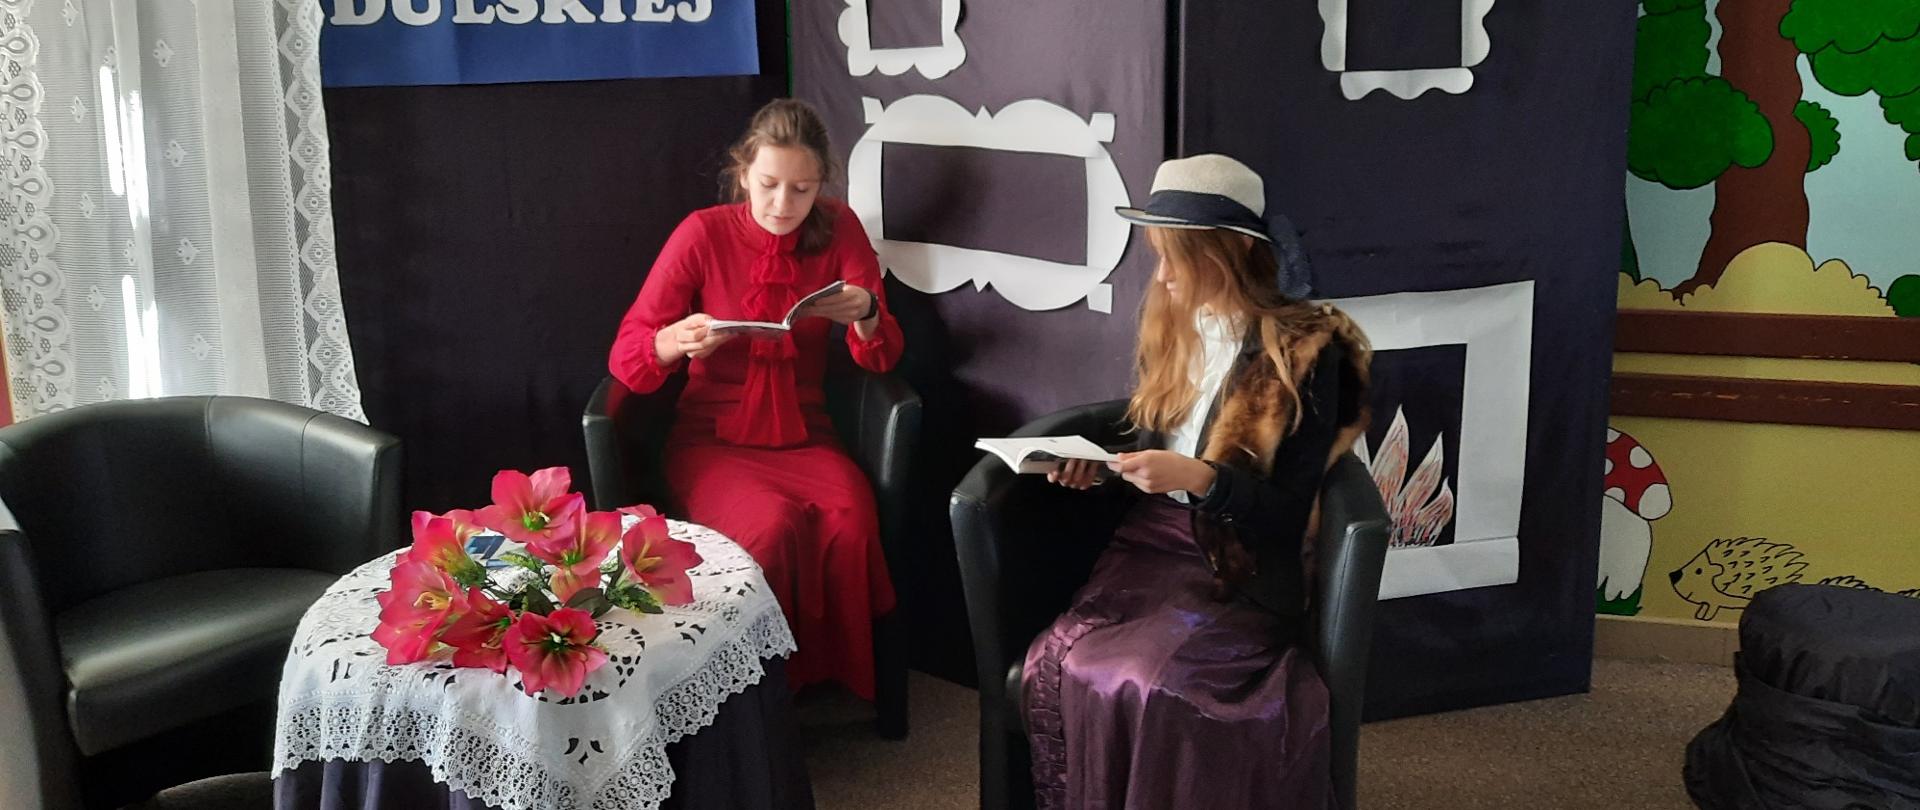 Dwie dziewczyny siedzą na fotelach i czytają książki. Między nimi stoi przykryty haftowanym obrusem stolik. Za nimi na ściance napis Moralność Pani Dulskiej